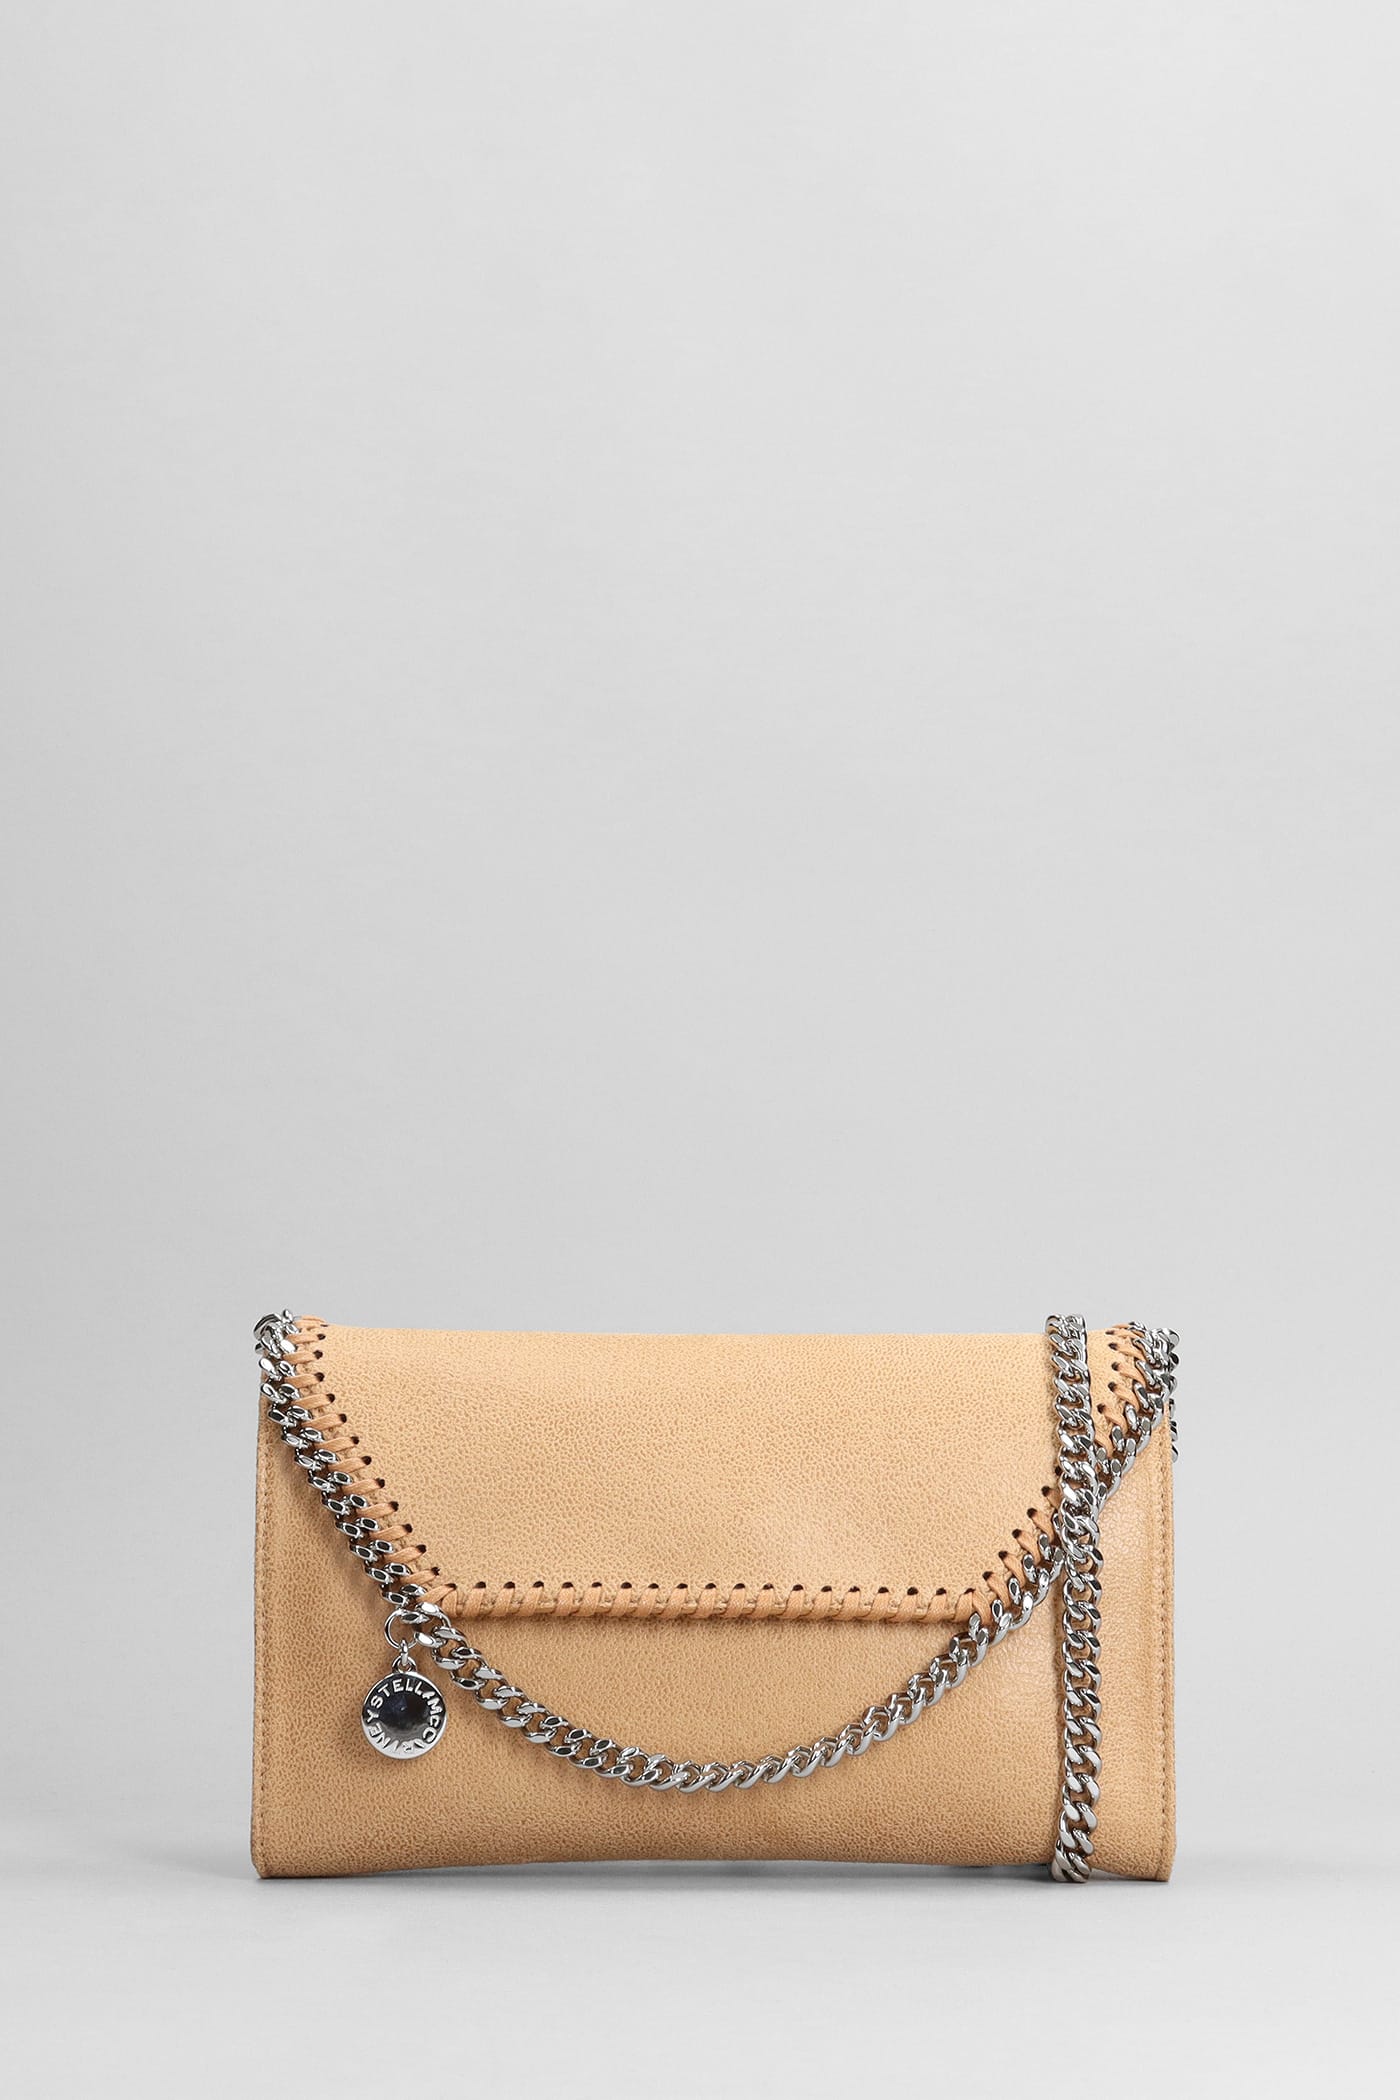 Stella Mccartney Falabella Shoulder Bag In Leather Color Polyester